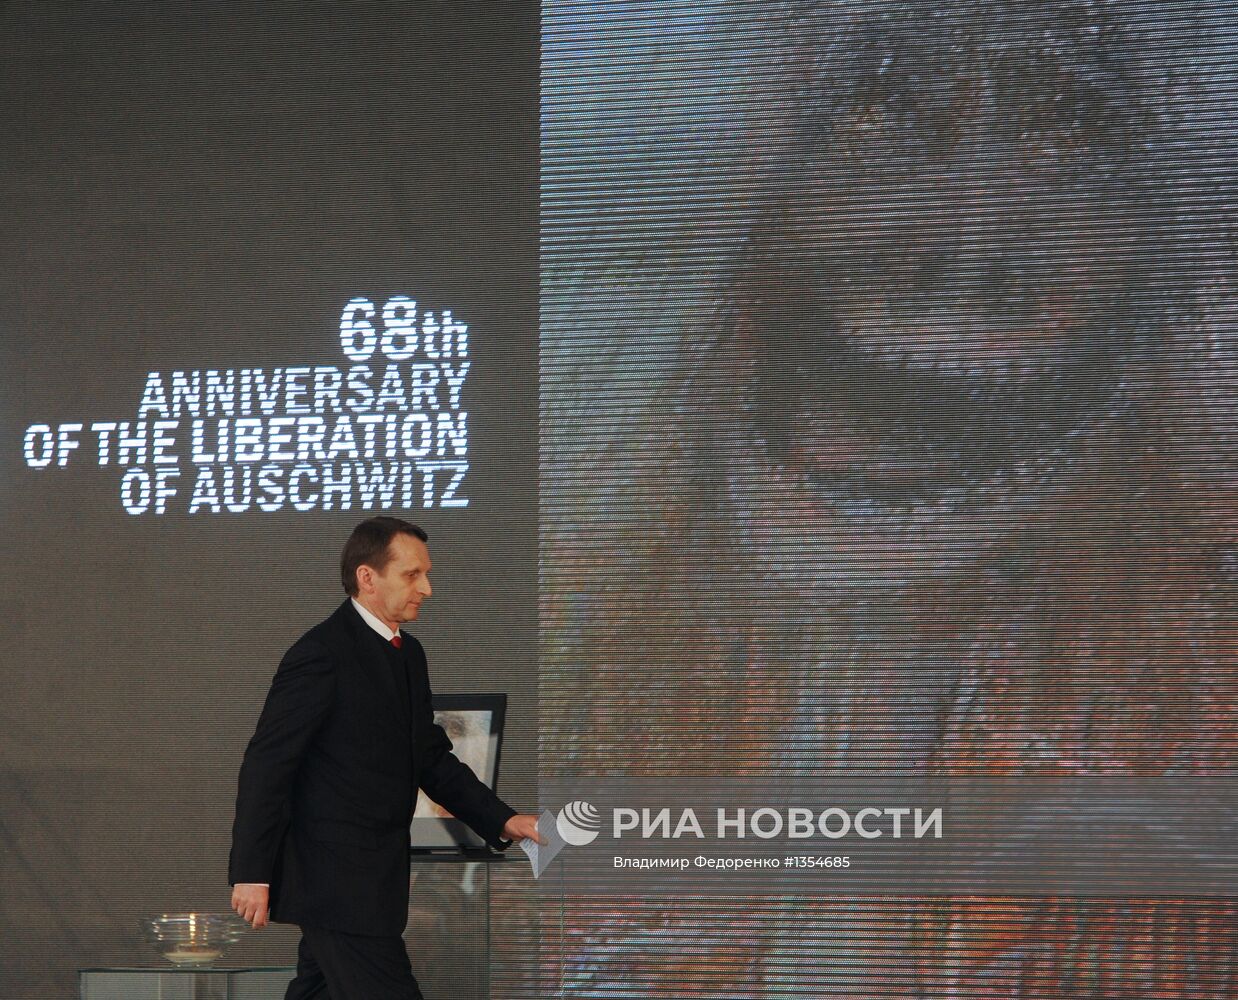 Мероприятия, посвященные 68-й годовщине освобождения Освенцима